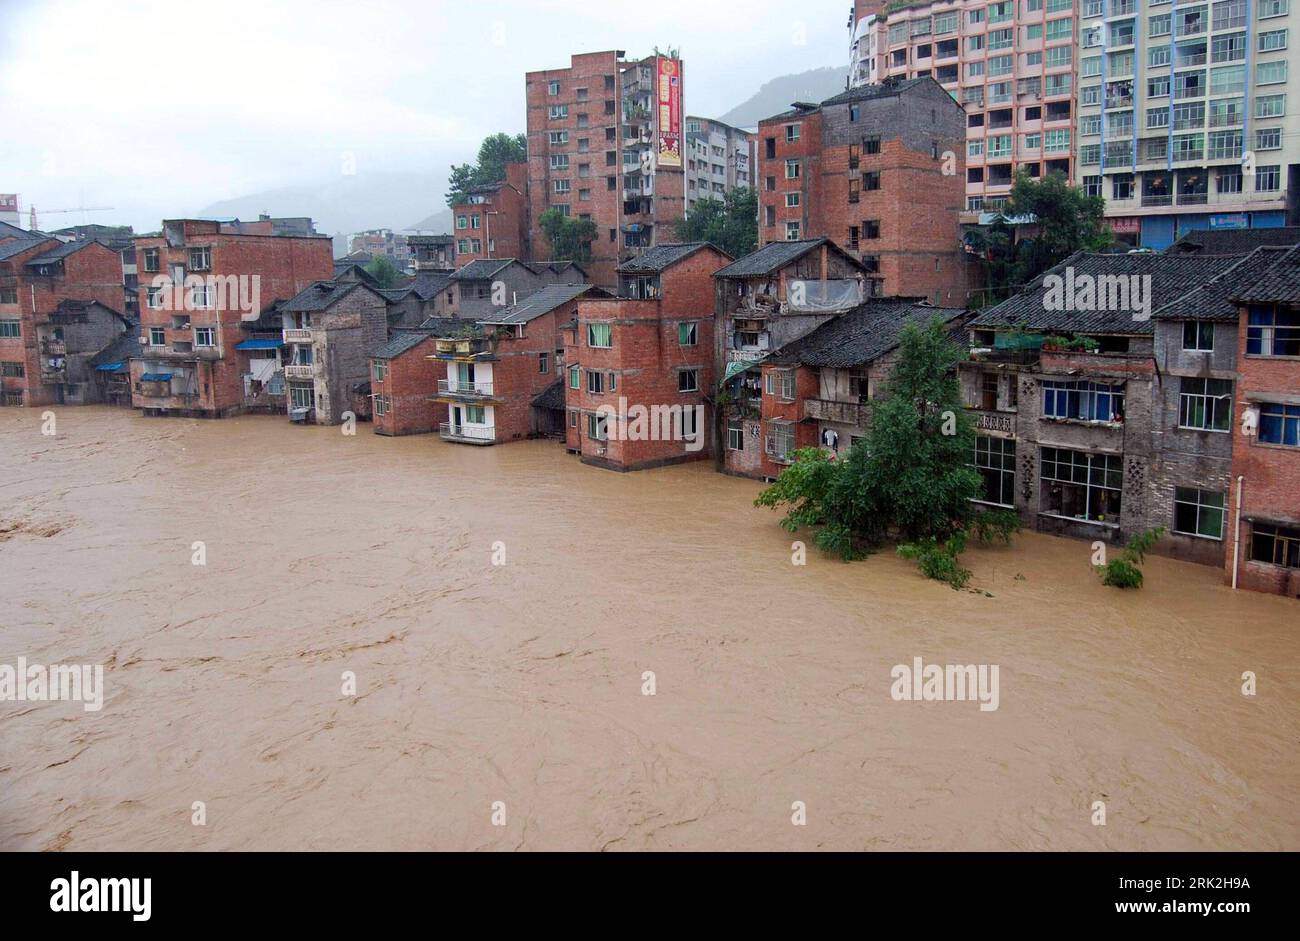 Bildnummer : 53194289 Datum : 12.07.2009 Copyright : imago/Xinhua (090712) -- DAZHOU(SICHUAN), 12 juillet 2009 (Xinhua) -- une photo prise le 12 juillet 2009 montre les rues inondées de la ville de Nanba du comté de Yihan dans la ville de Dazhou, province du Sichuan dans le sud-ouest de la Chine. De fortes pluies ont frappé une grande zone de Dazhou après midi le dimanche. Au total, 10,2000 résidents ont été transférés dans des zones sûres et 2 personnes ont été portées disparues pendant la catastrophe. (Xinhua/Deng Liangkui) (kh) #(1)CHINA-SICHUAN-DAZHOU-STORM (CN) PUBLICATIONxNOTxINxCHN Naturkatastrophe Überschwemmung kbdig xcb 2009 quer premiu Banque D'Images